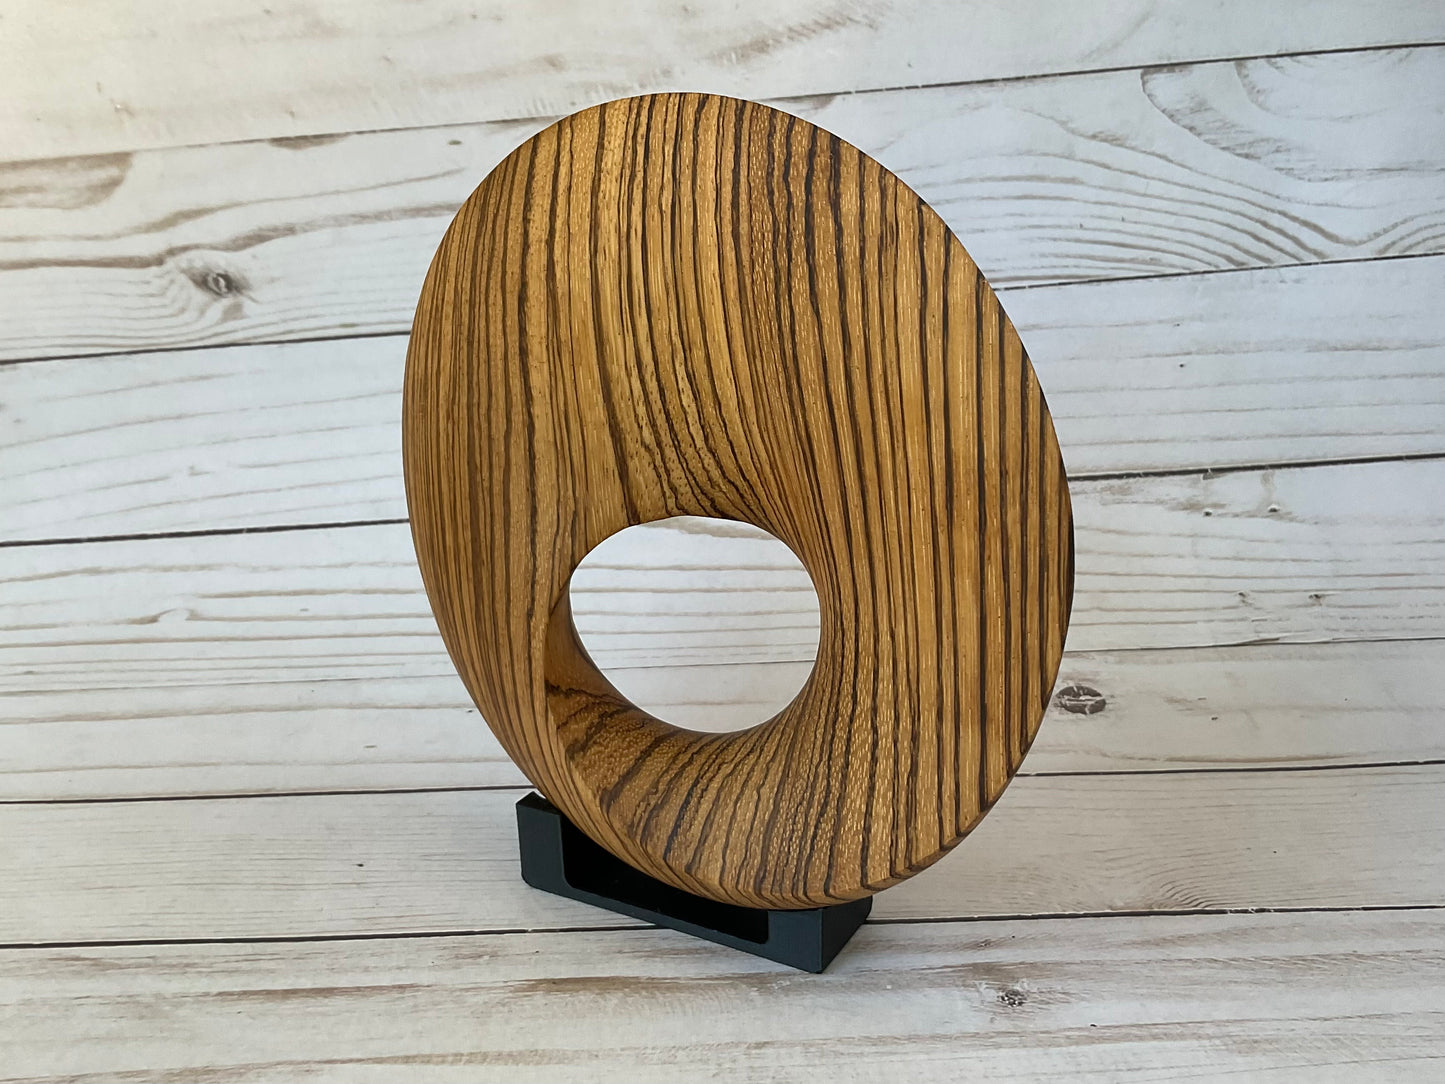 Möbius Strip Wooden Sculpture, Zebrawood, 7"